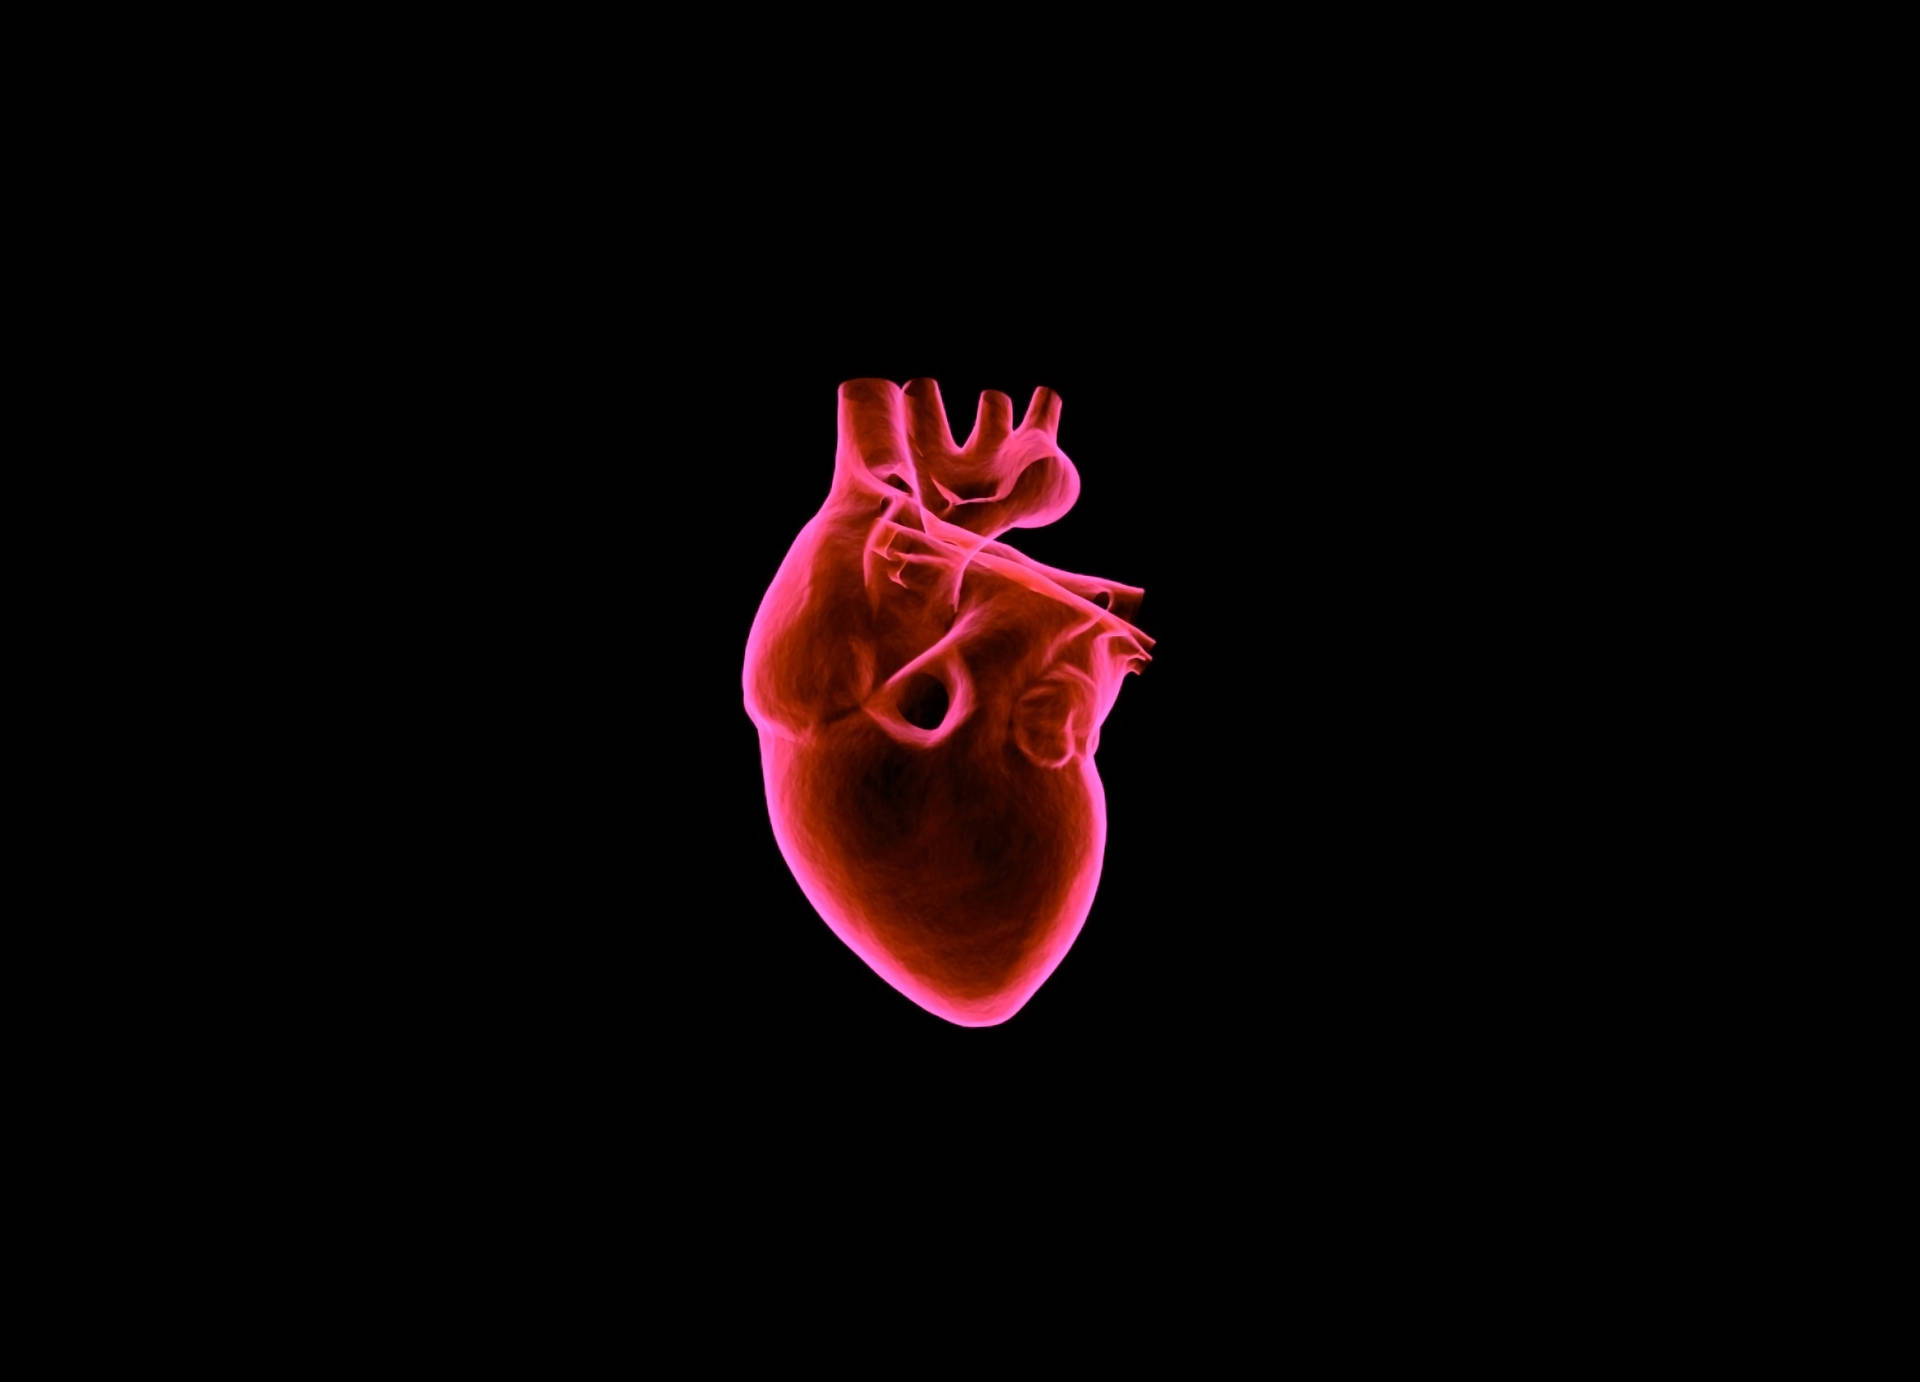 Anatomically Correct Dark Heart Art